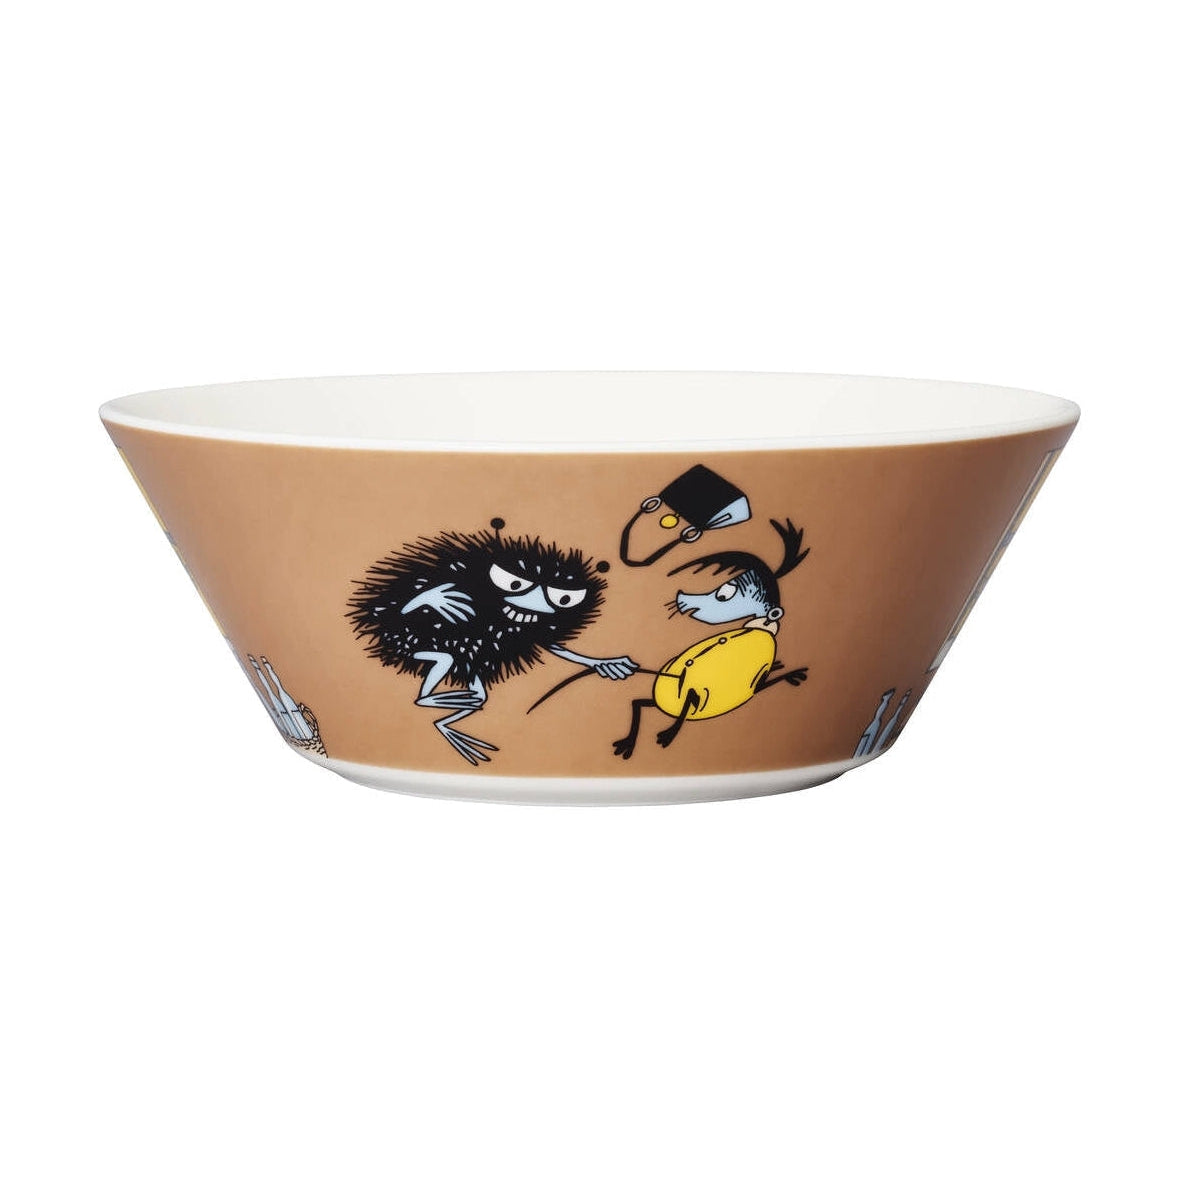 Arabien Moomin Bowl 15 cm, stinkende i aktion